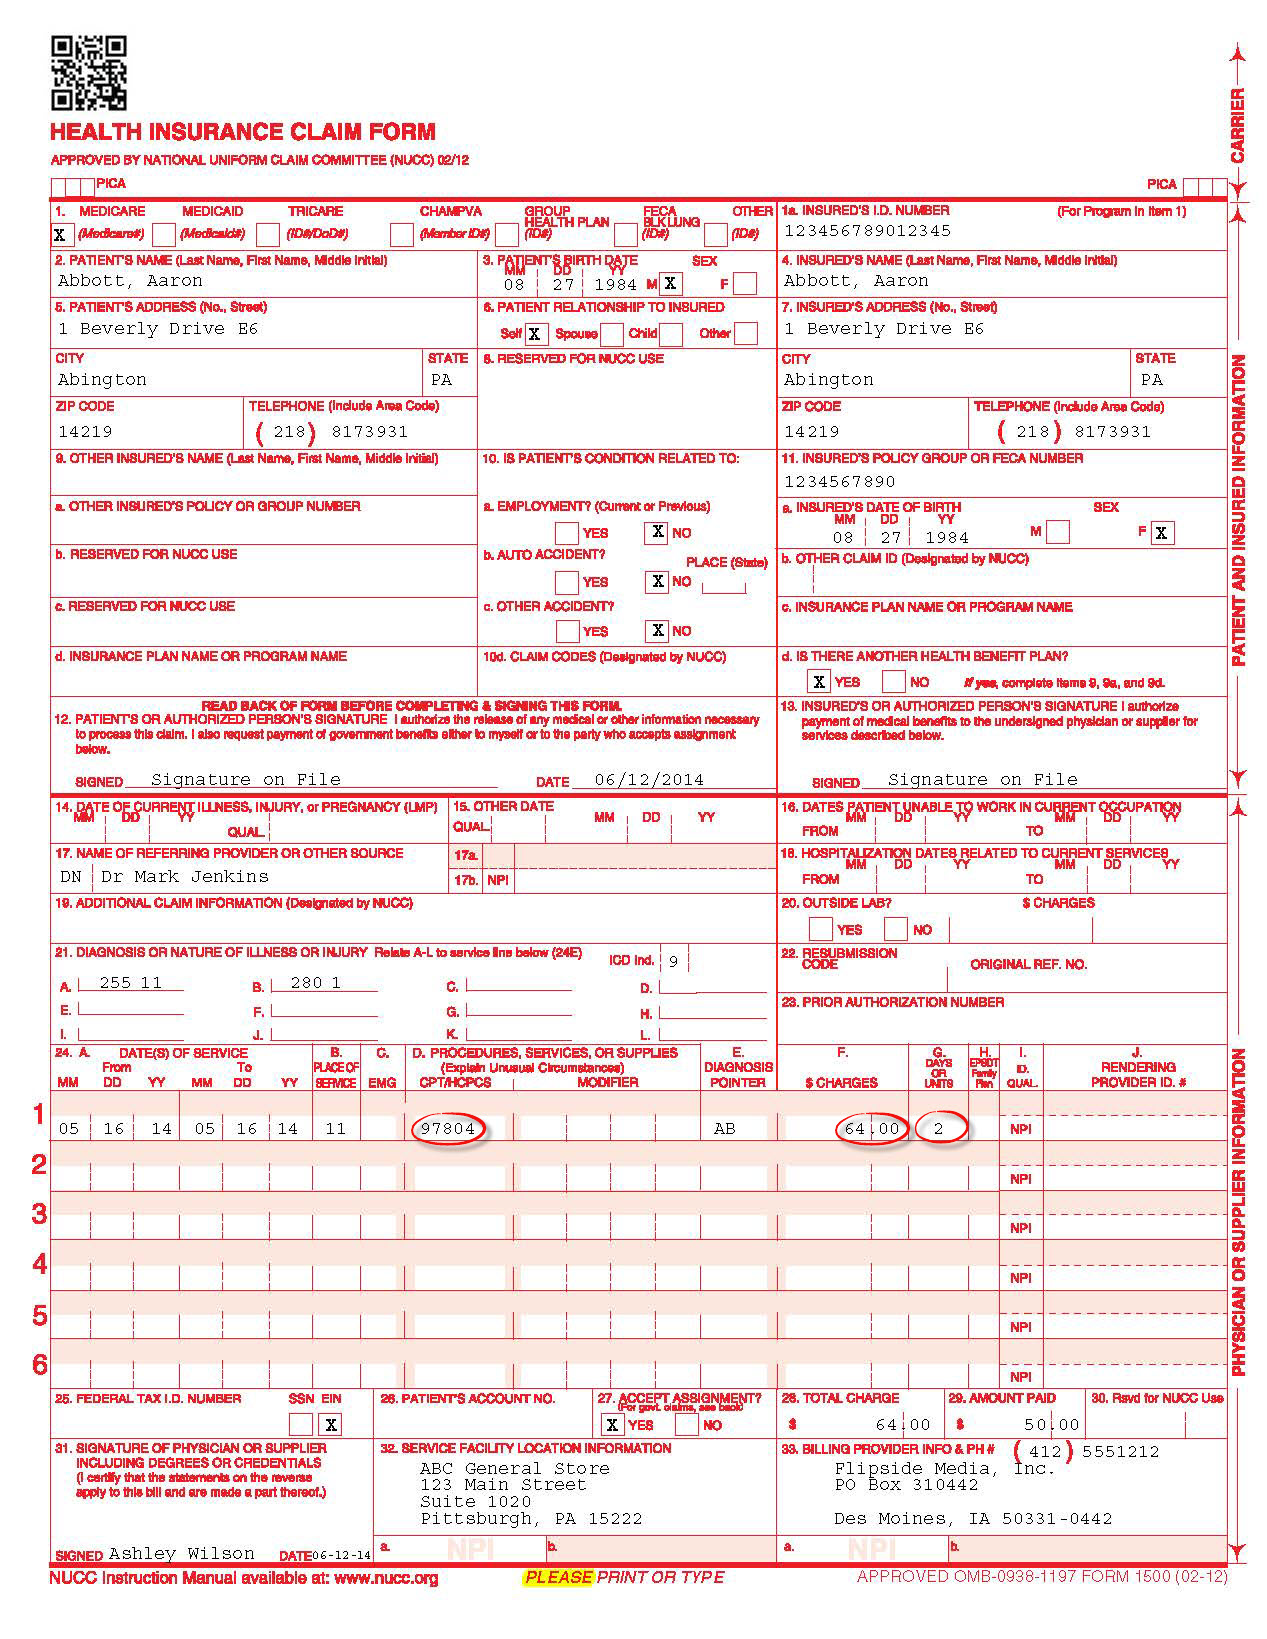 1. Generate a CMS 1500 Form (formerly HCFA 1500) – PHRQL Help